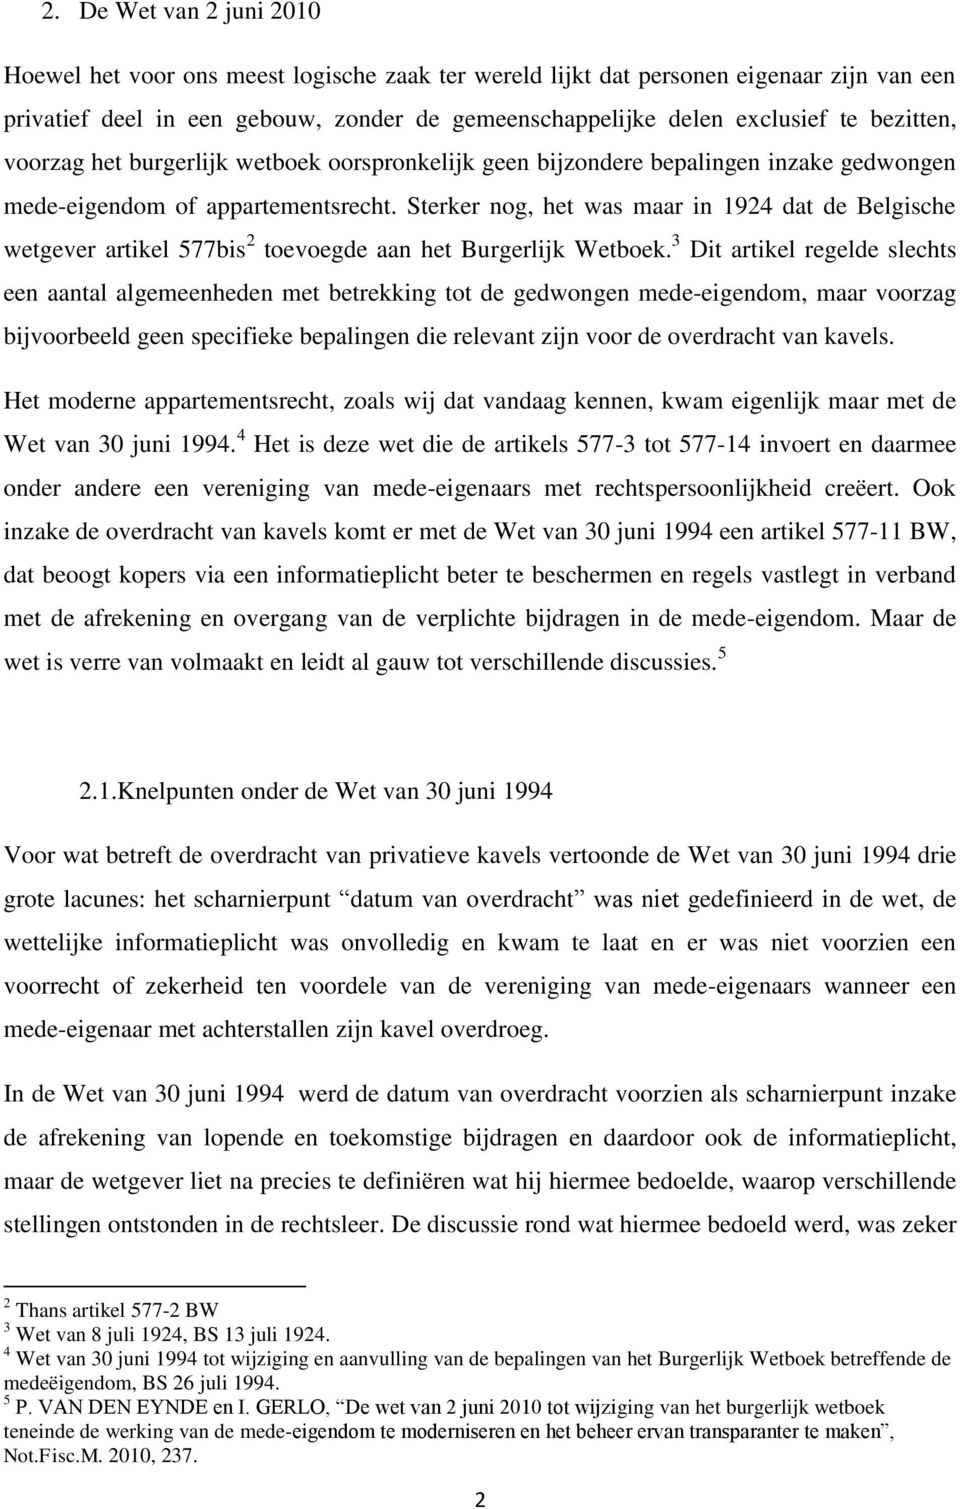 Sterker nog, het was maar in 1924 dat de Belgische wetgever artikel 577bis 2 toevoegde aan het Burgerlijk Wetboek.